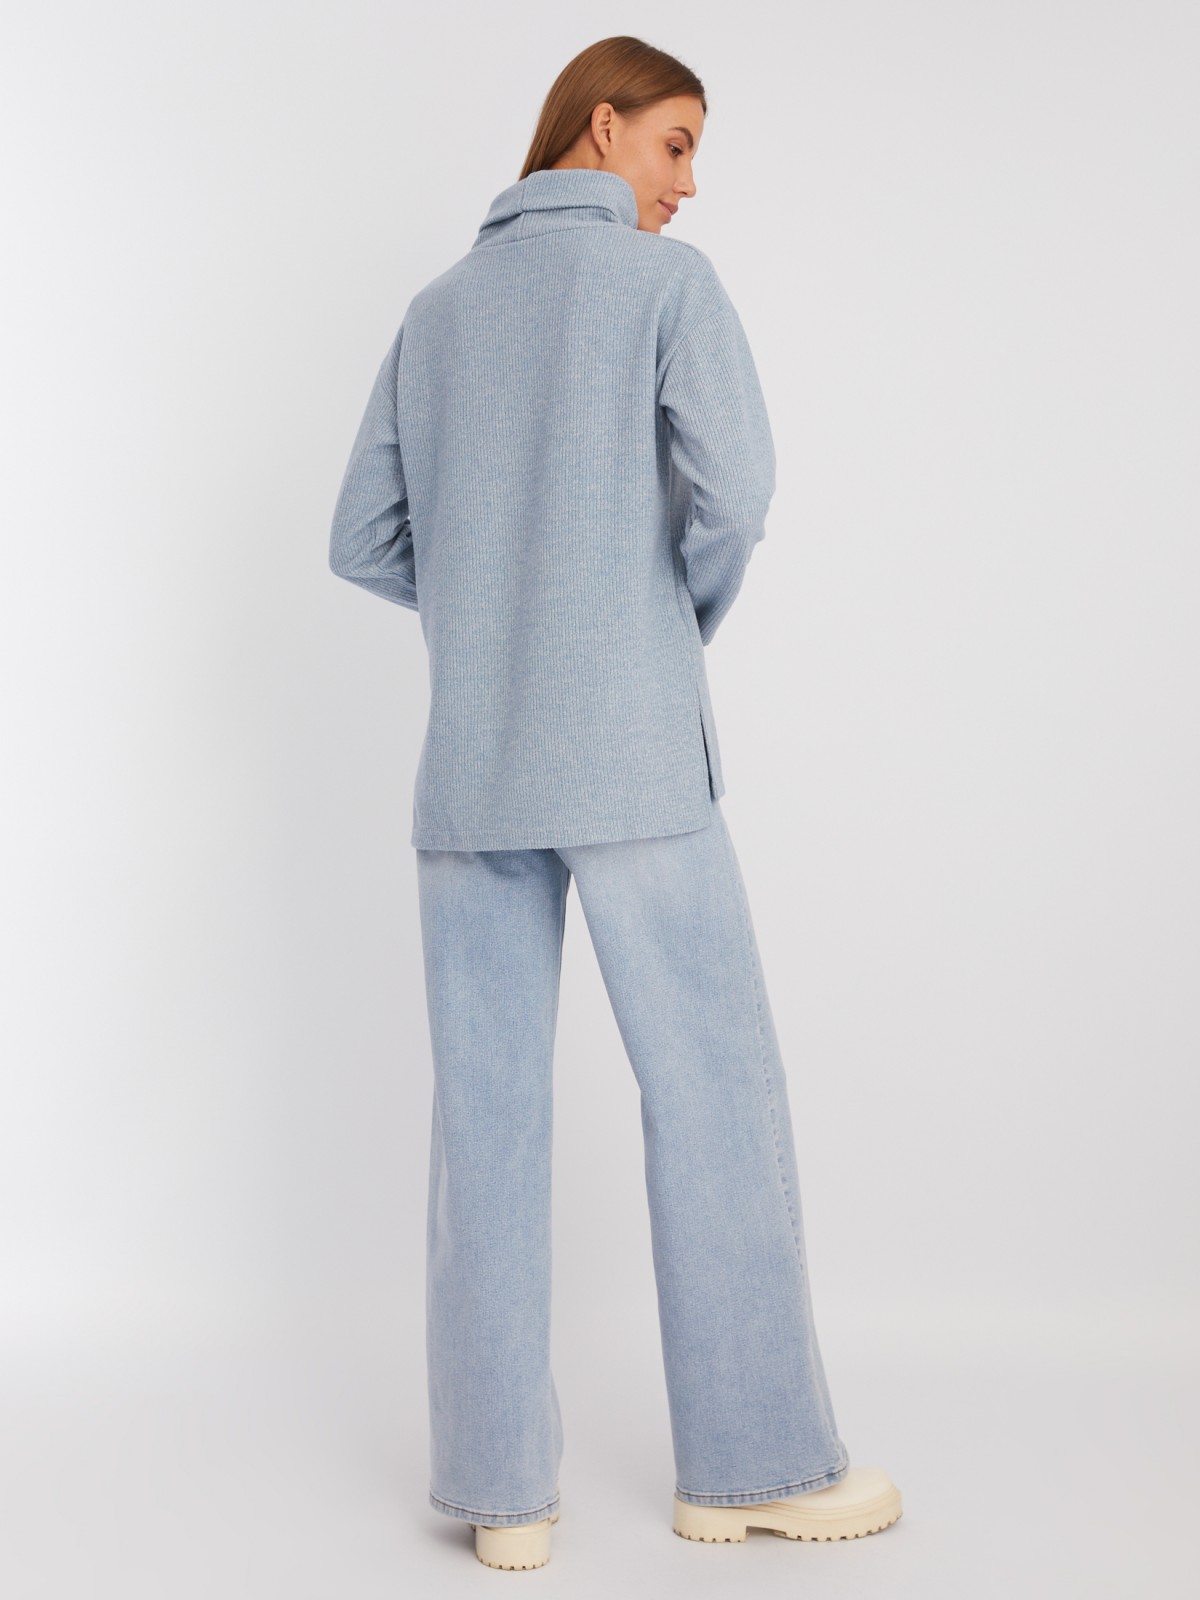 Вязаный свитер прямого силуэта с воротником-хомутом zolla 223433159053, цвет голубой, размер XS - фото 6